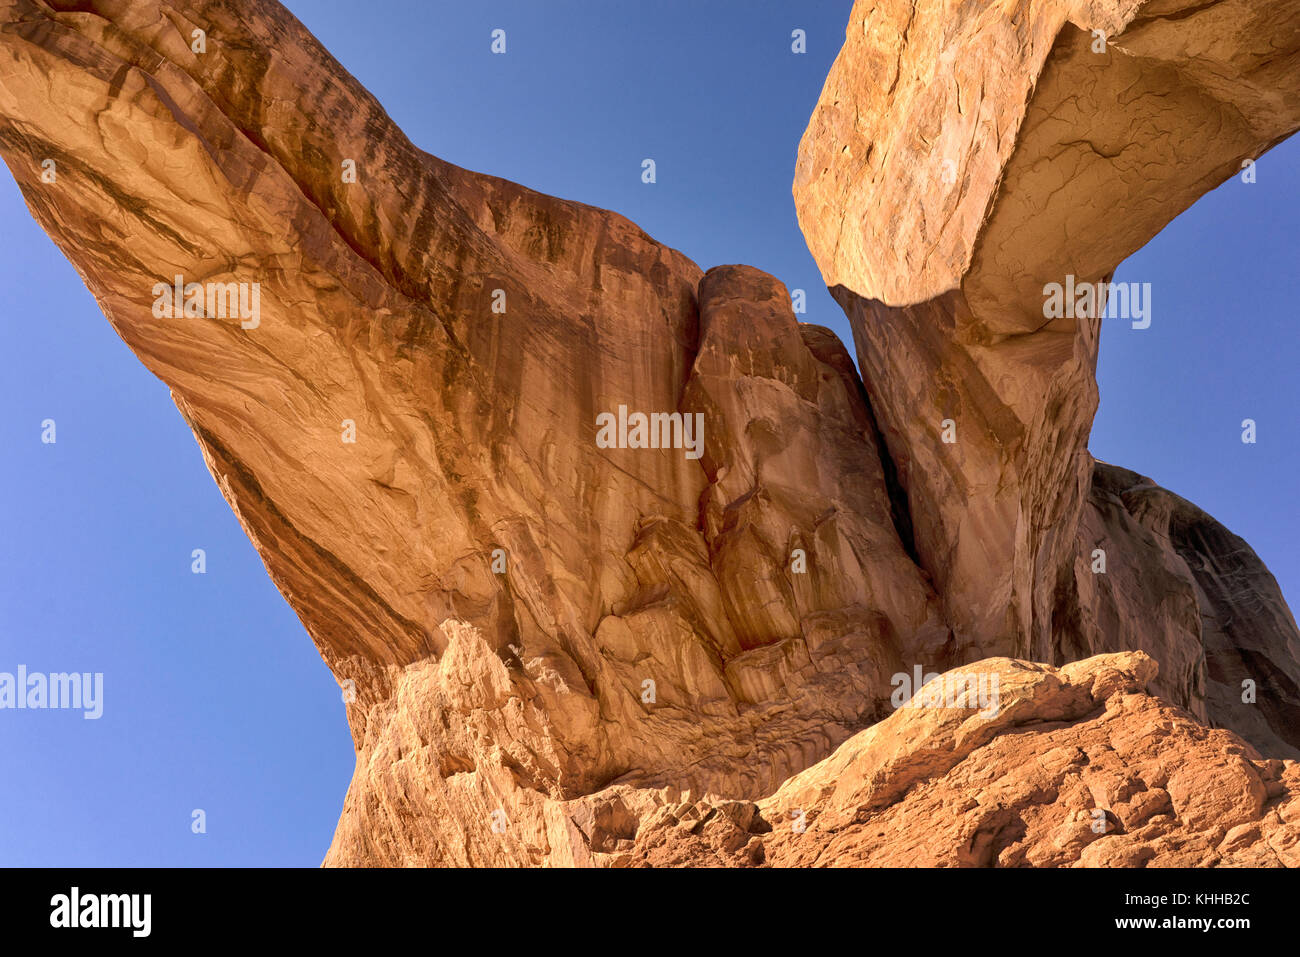 Détail d'Arches national park, Utah, USA, qui ressemble à un géant pétrifié Banque D'Images